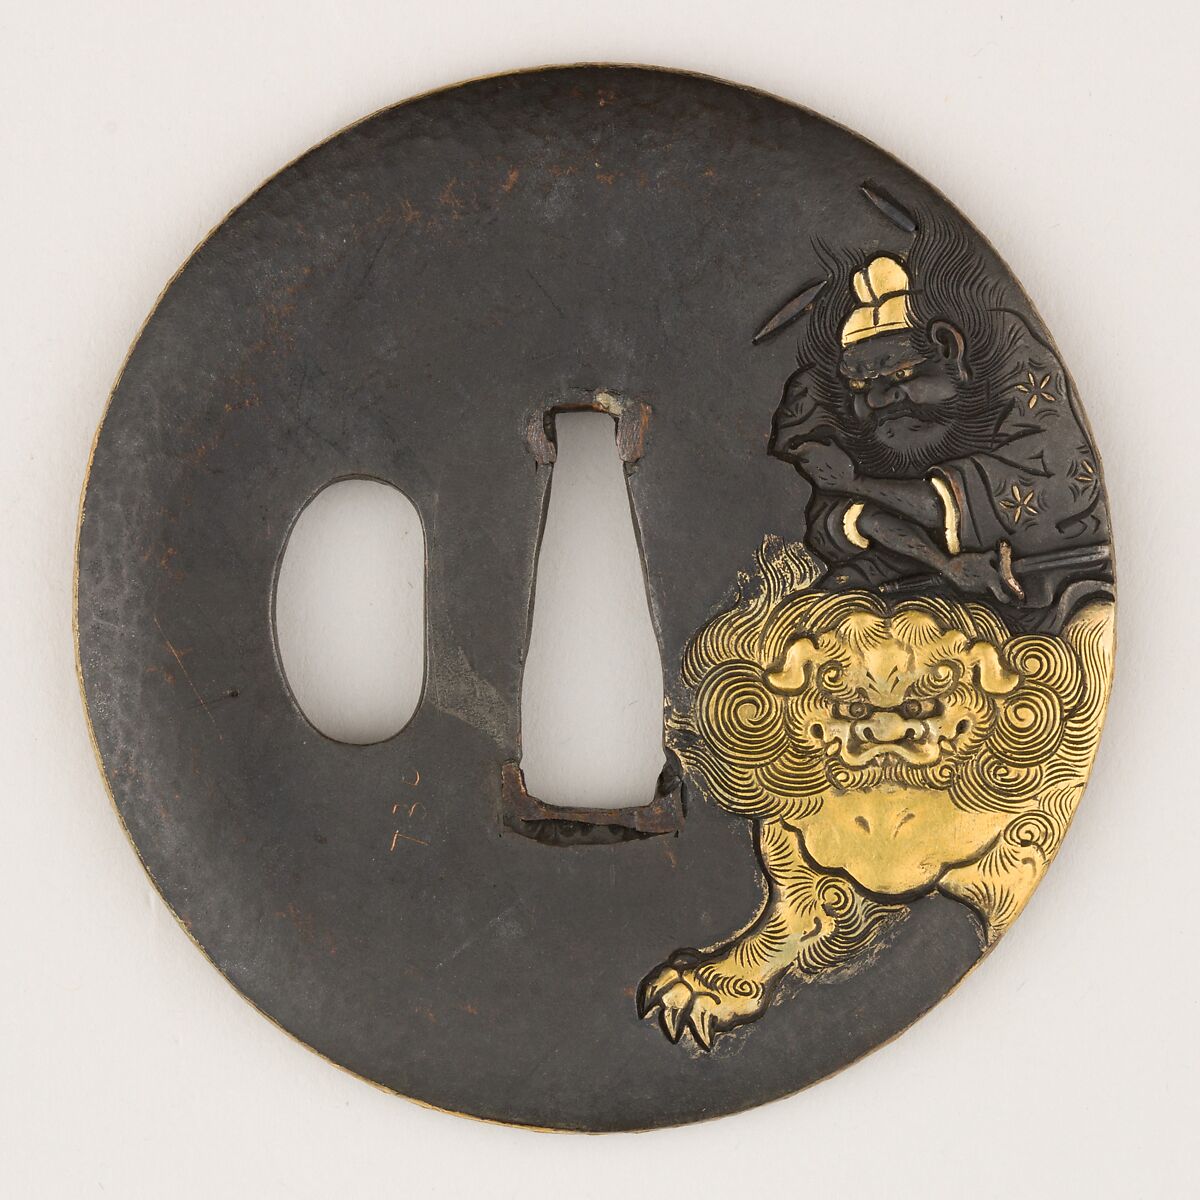 Sword Guard (Tsuba), Copper-silver alloy shibuichi), gold, copper, Japanese 